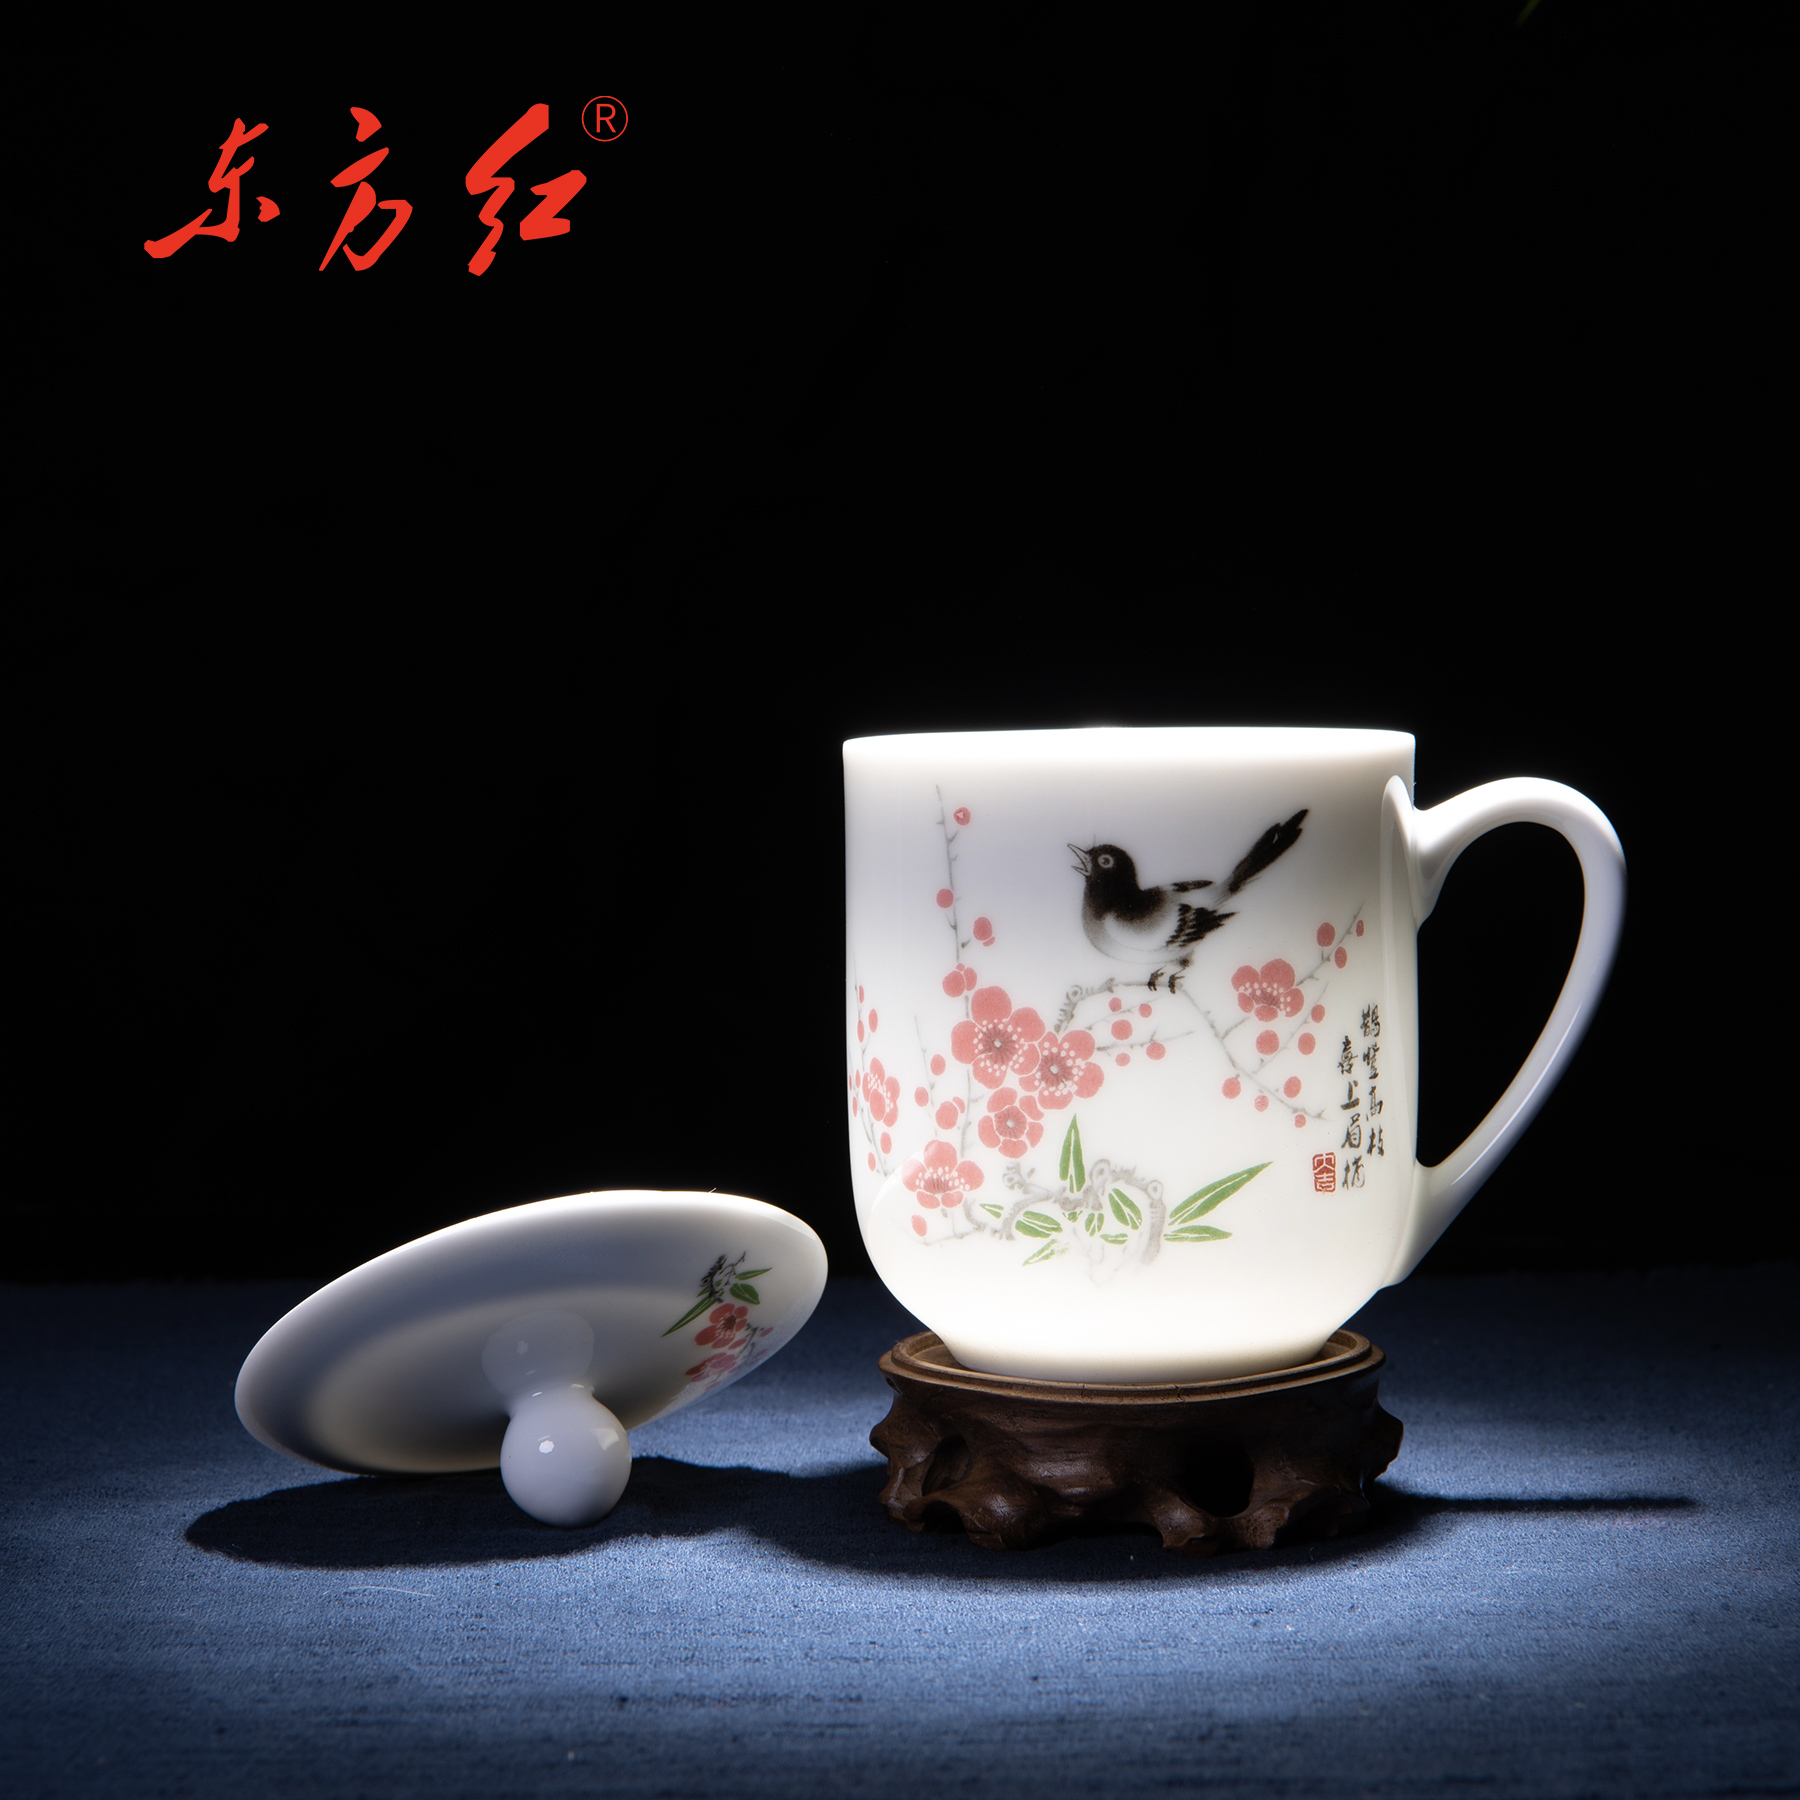 常委杯 - 醴陵东方红陶瓷有限公司 原醴陵国光瓷业重点品牌“东方红”